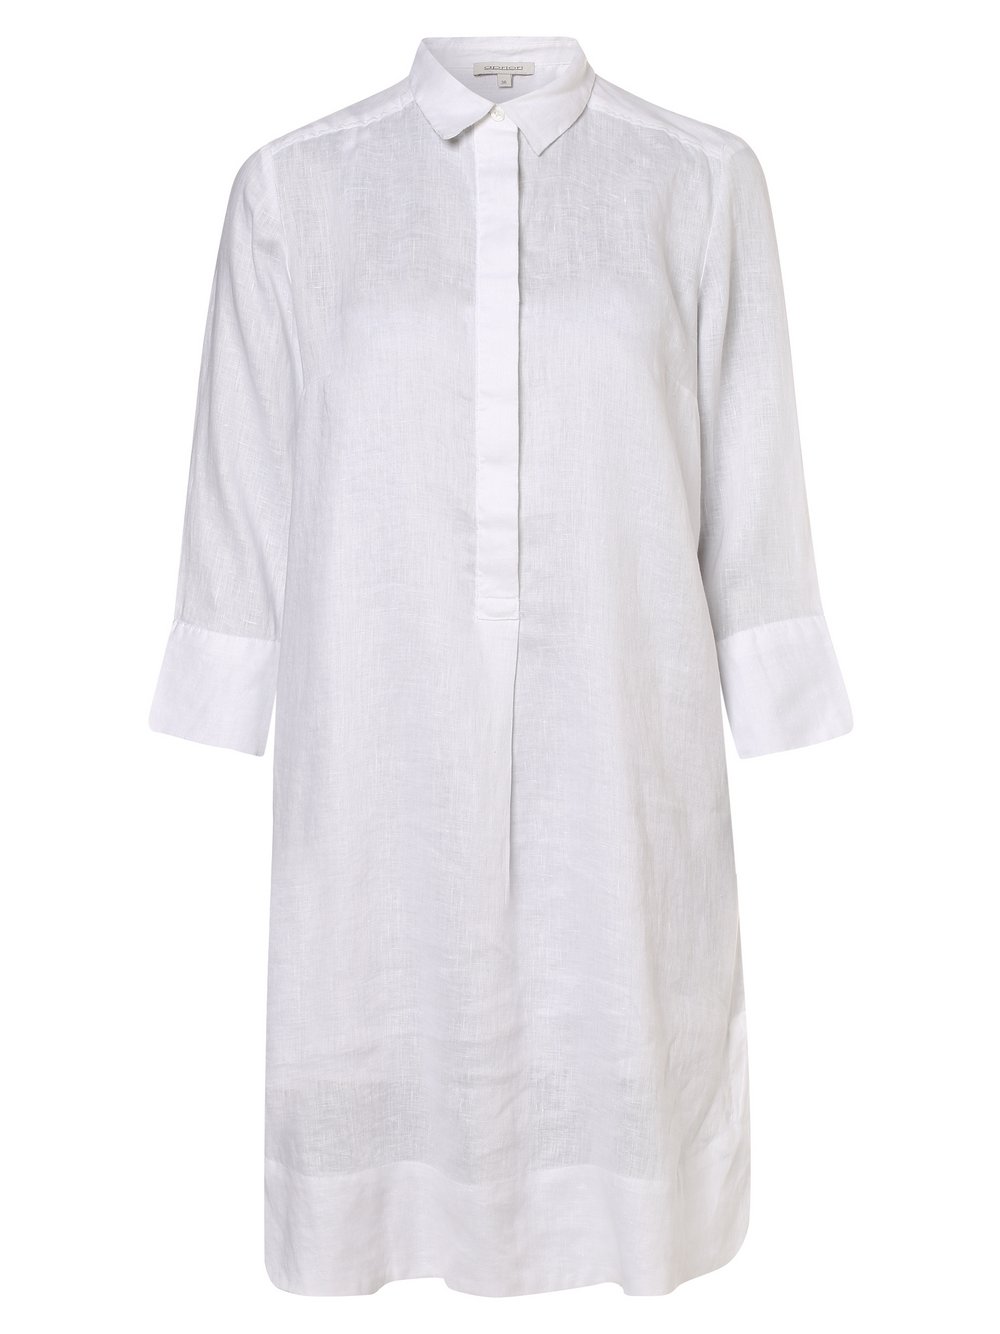 Apriori - Damska sukienka lniana, biały